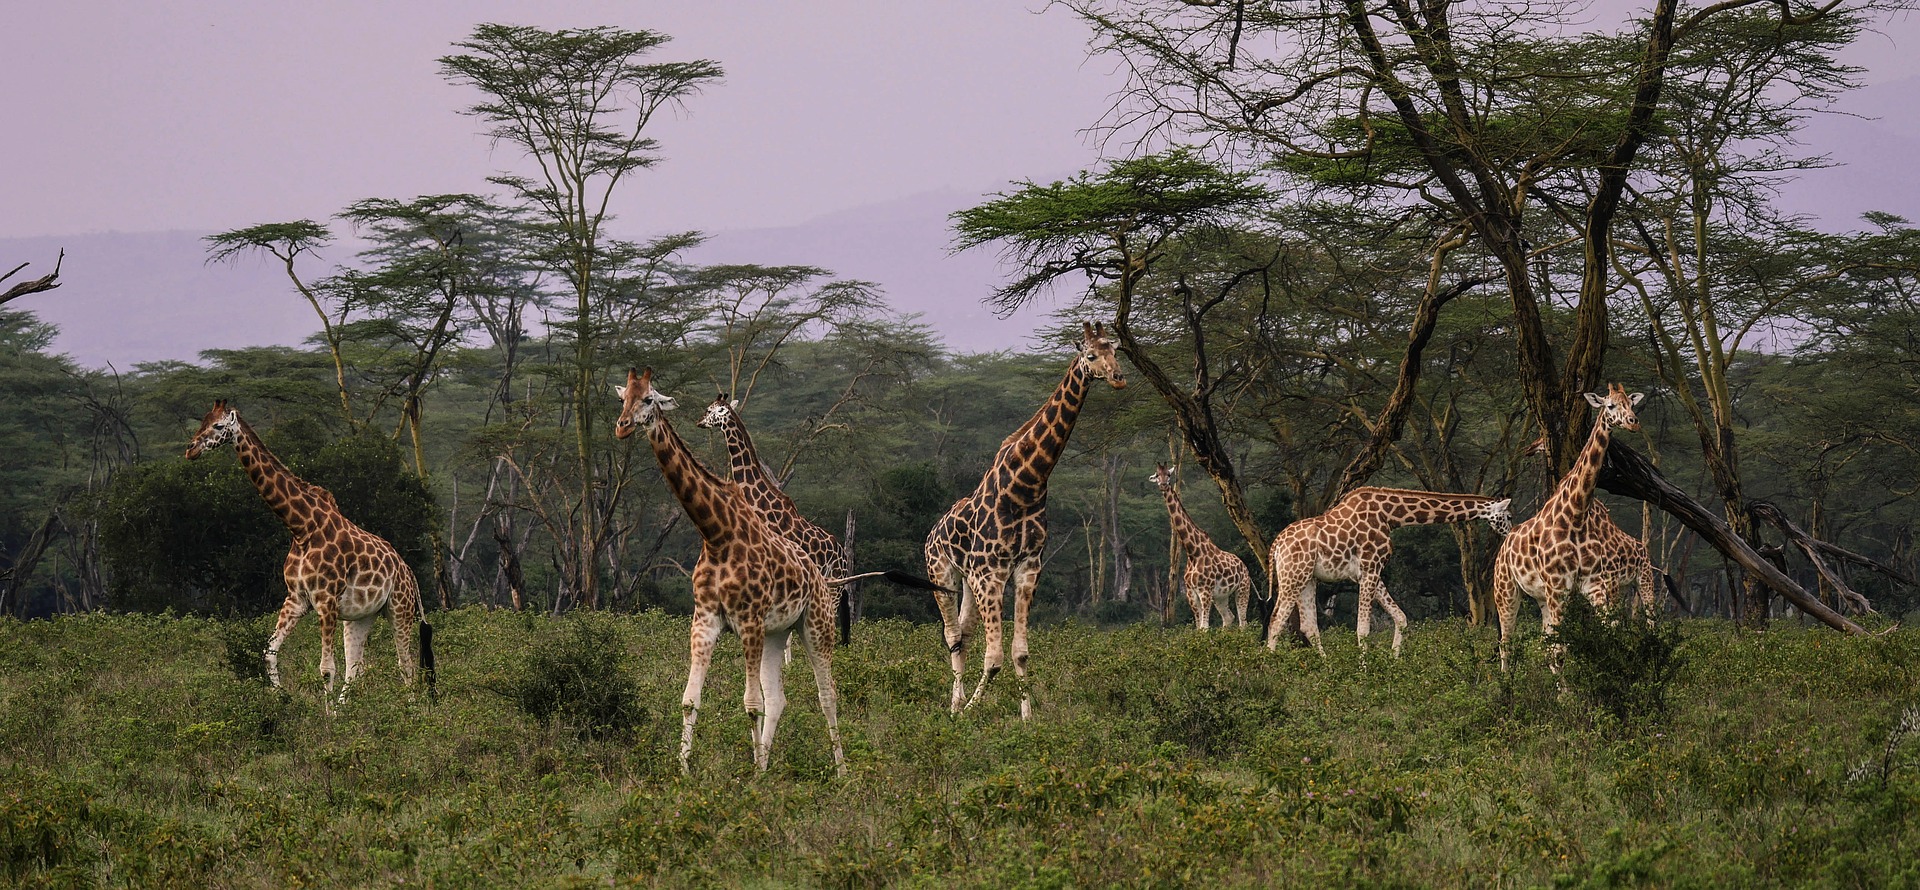 abitudini delle giraffe